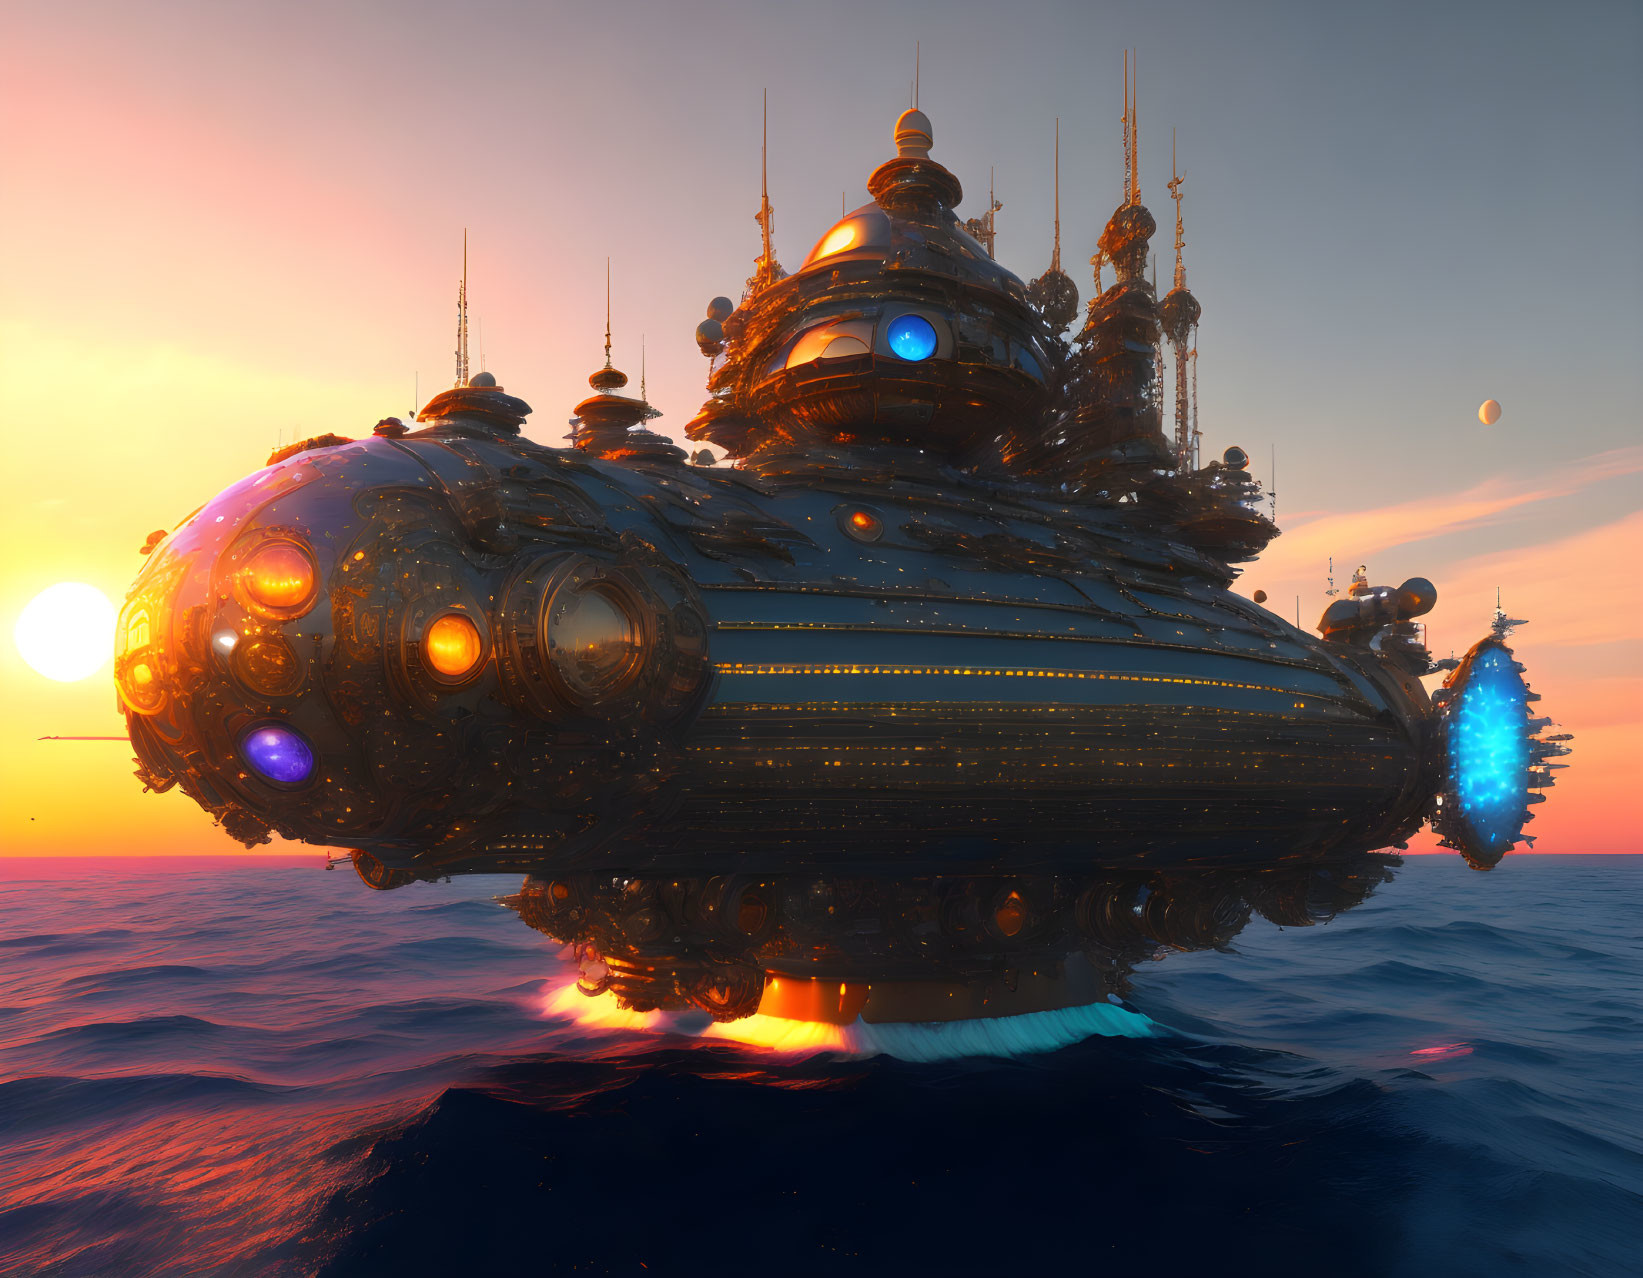 Futuristic spaceship over calm ocean at sunset